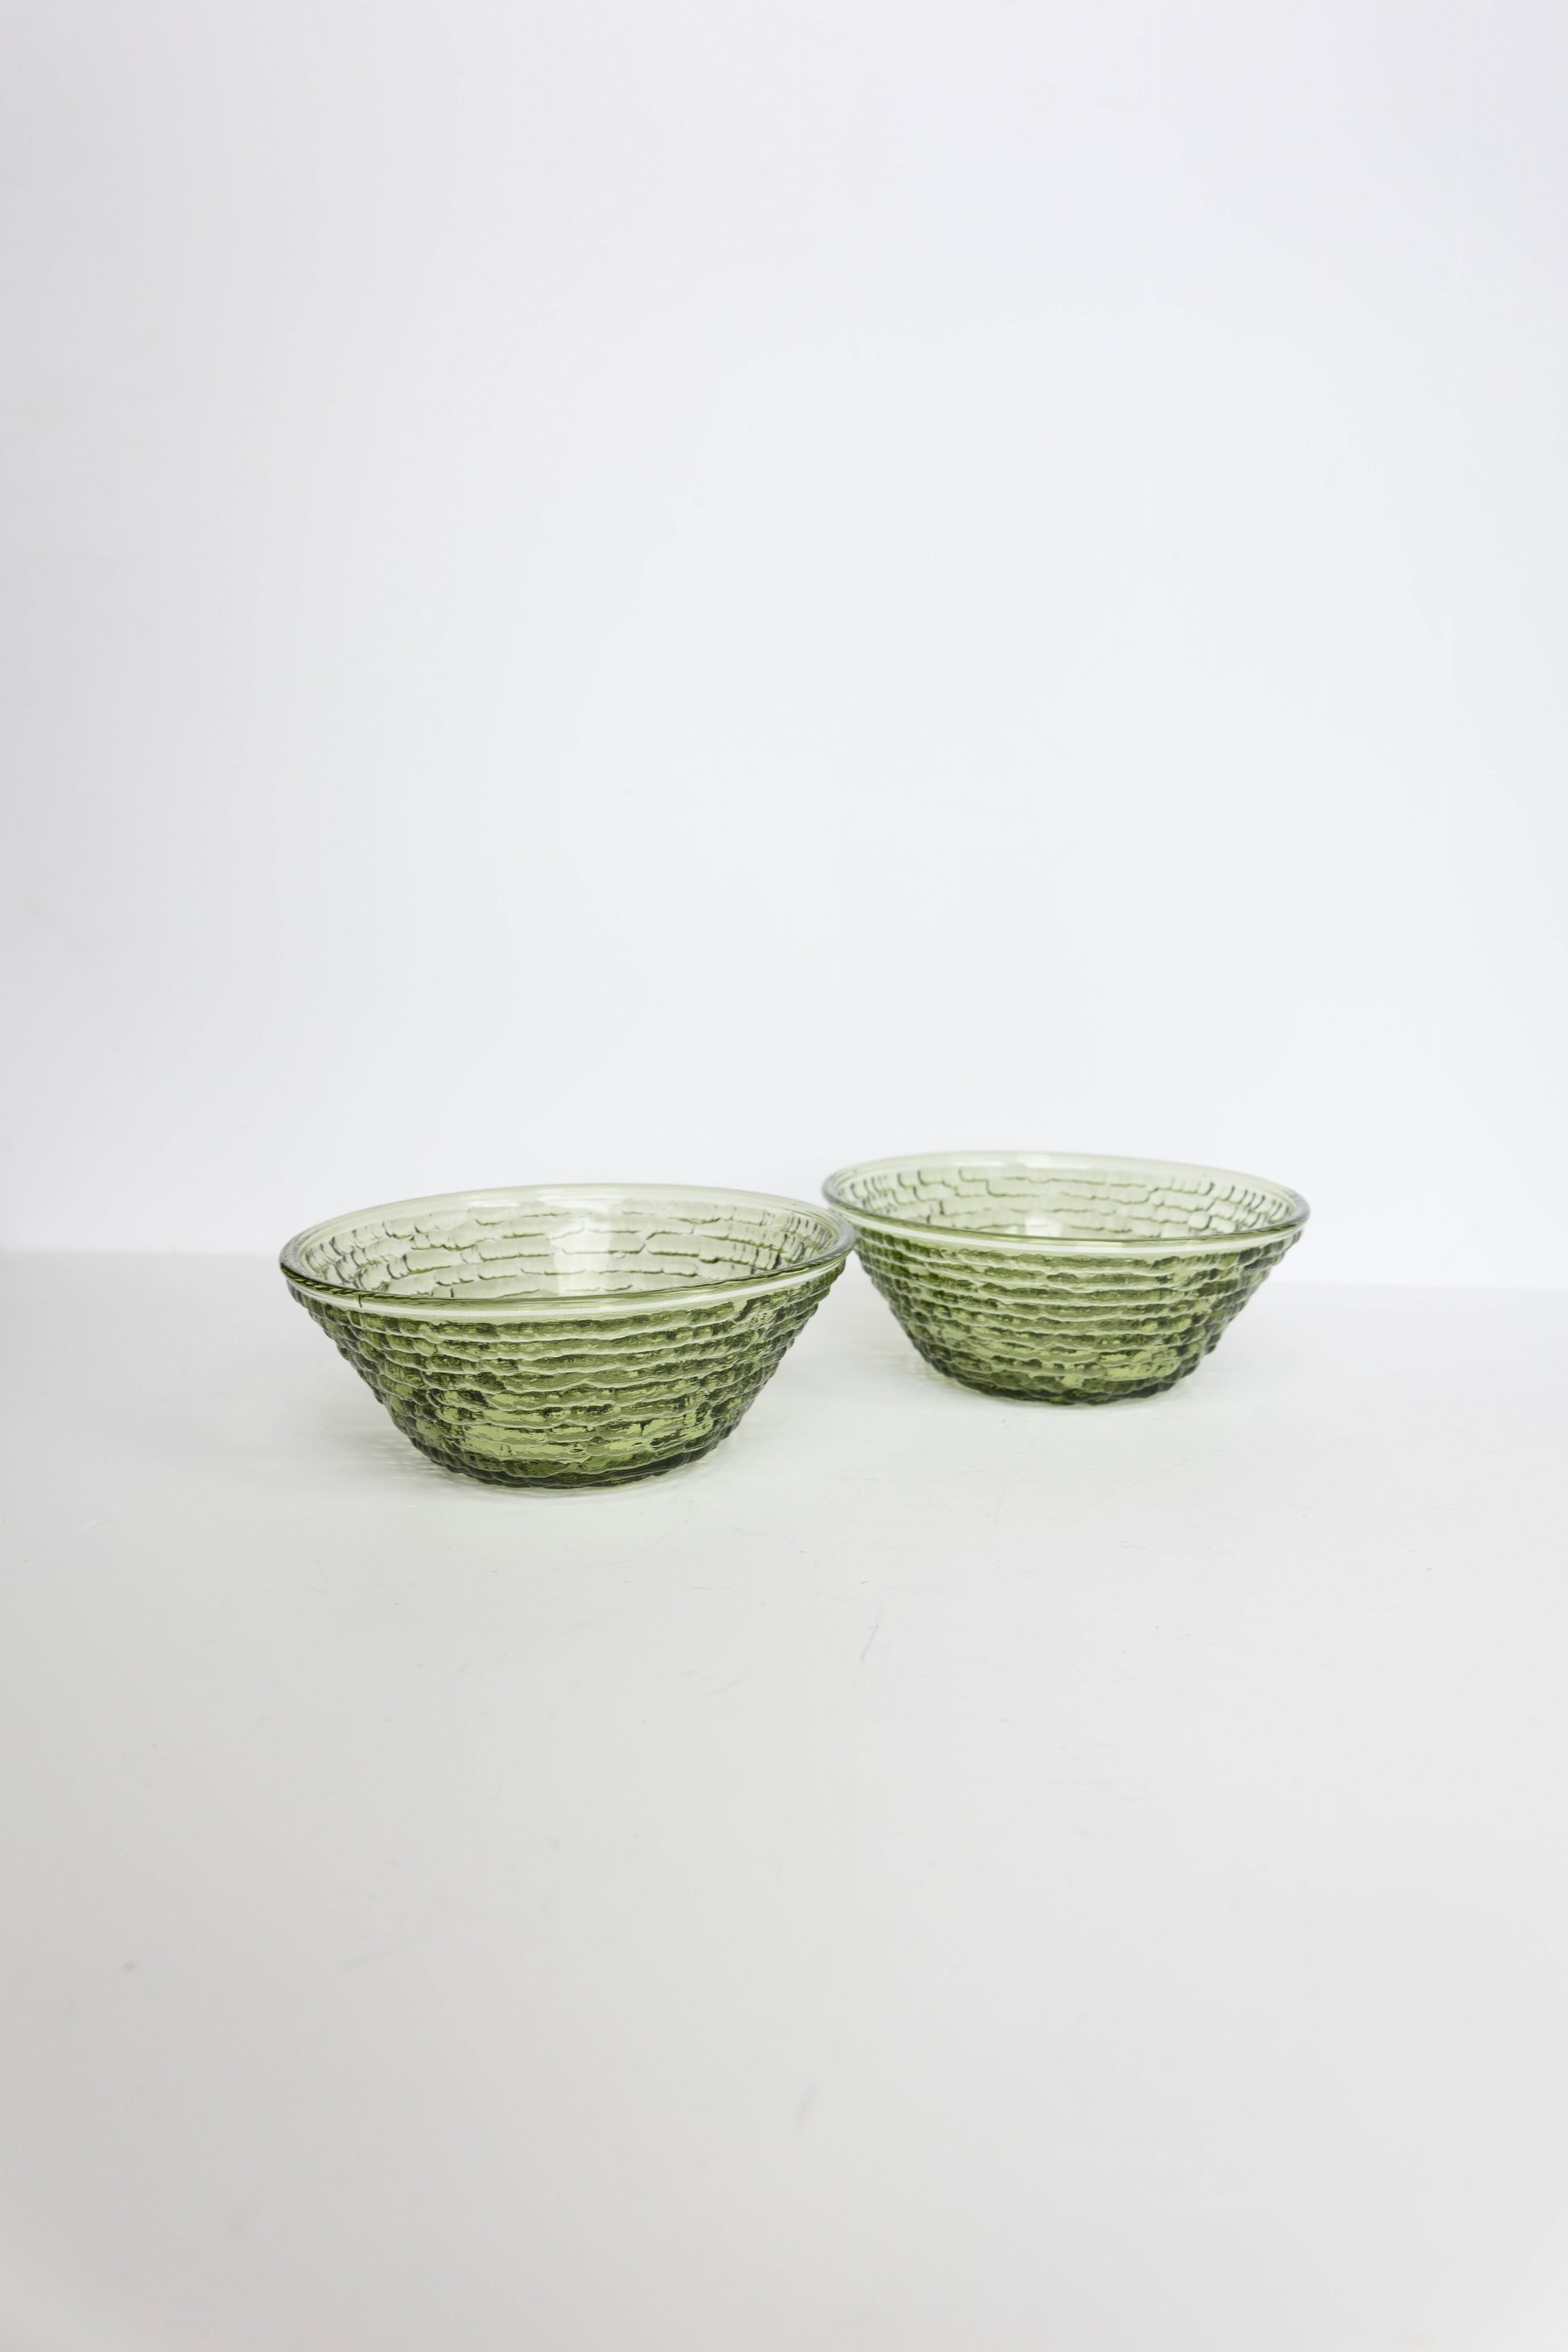 Vintage Green Glass Dessert Bowls - Set of 2